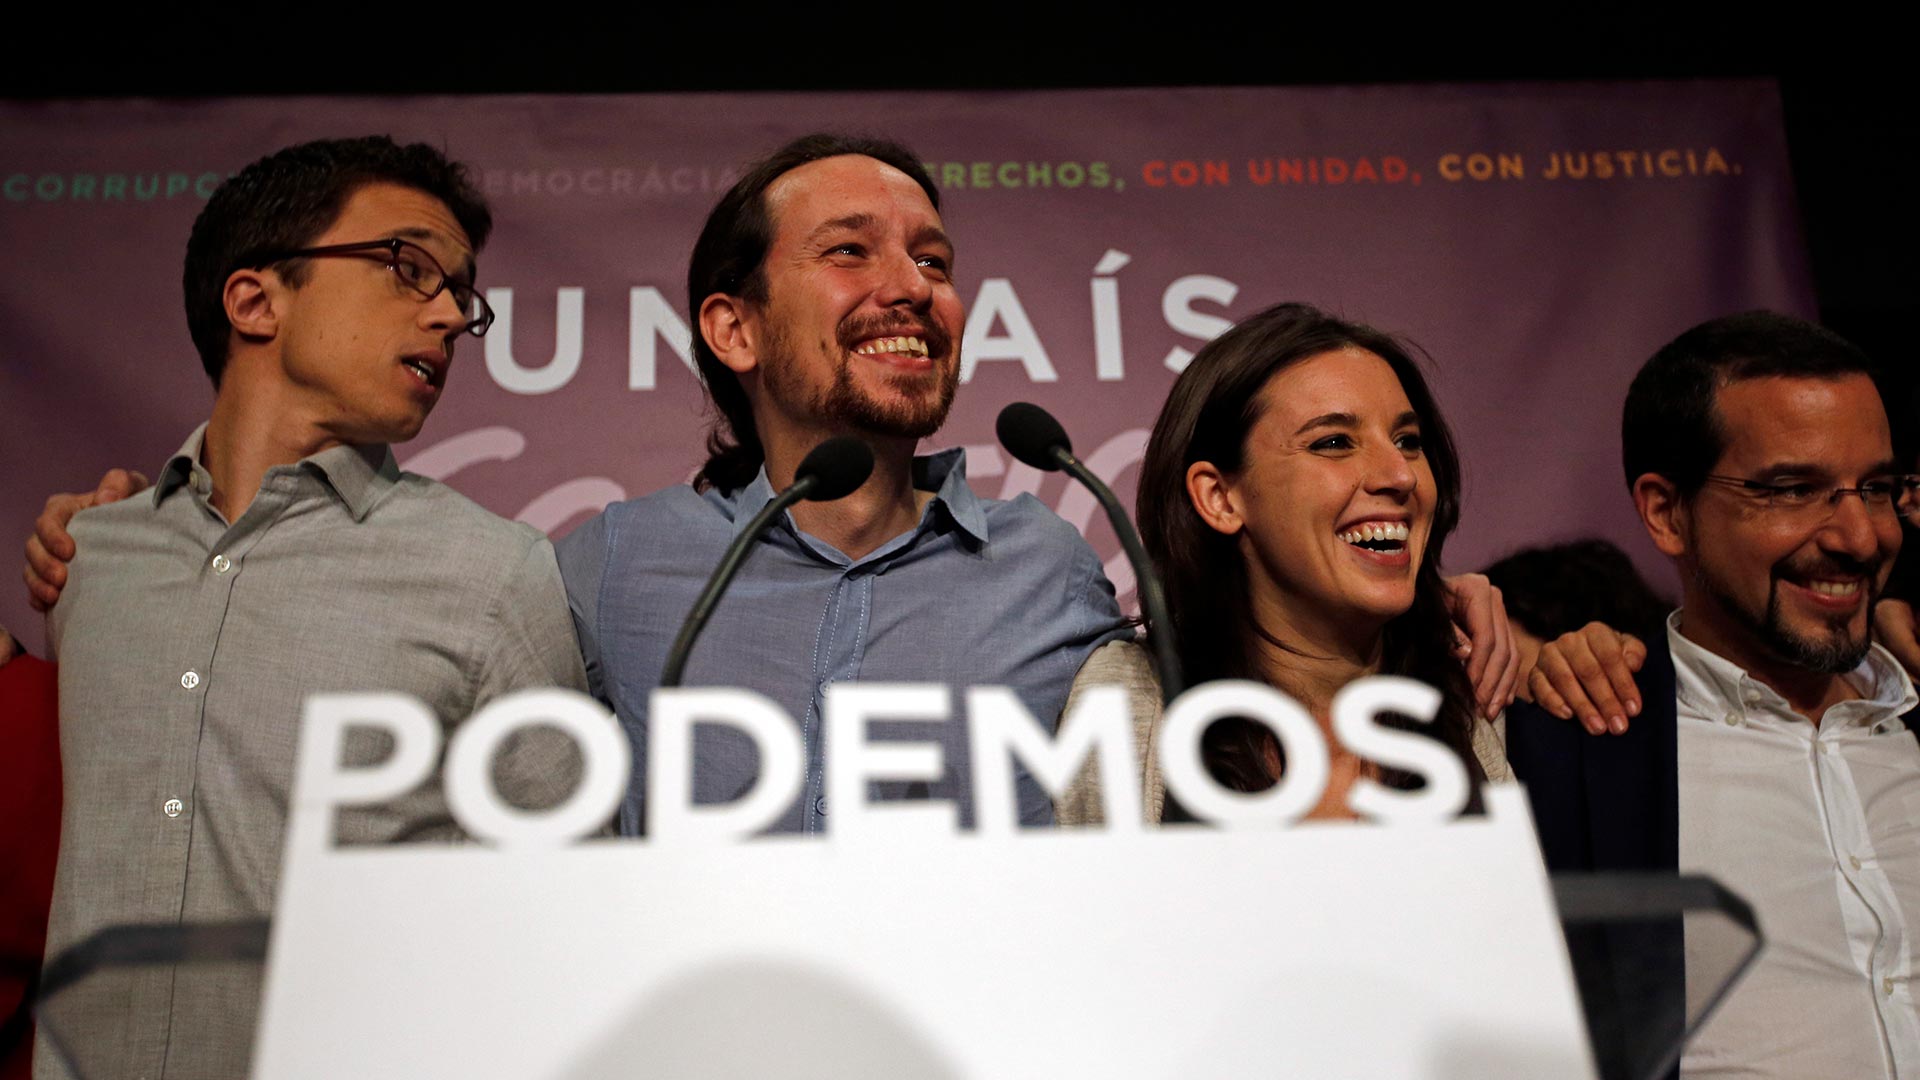 Qué ha sido de Podemos